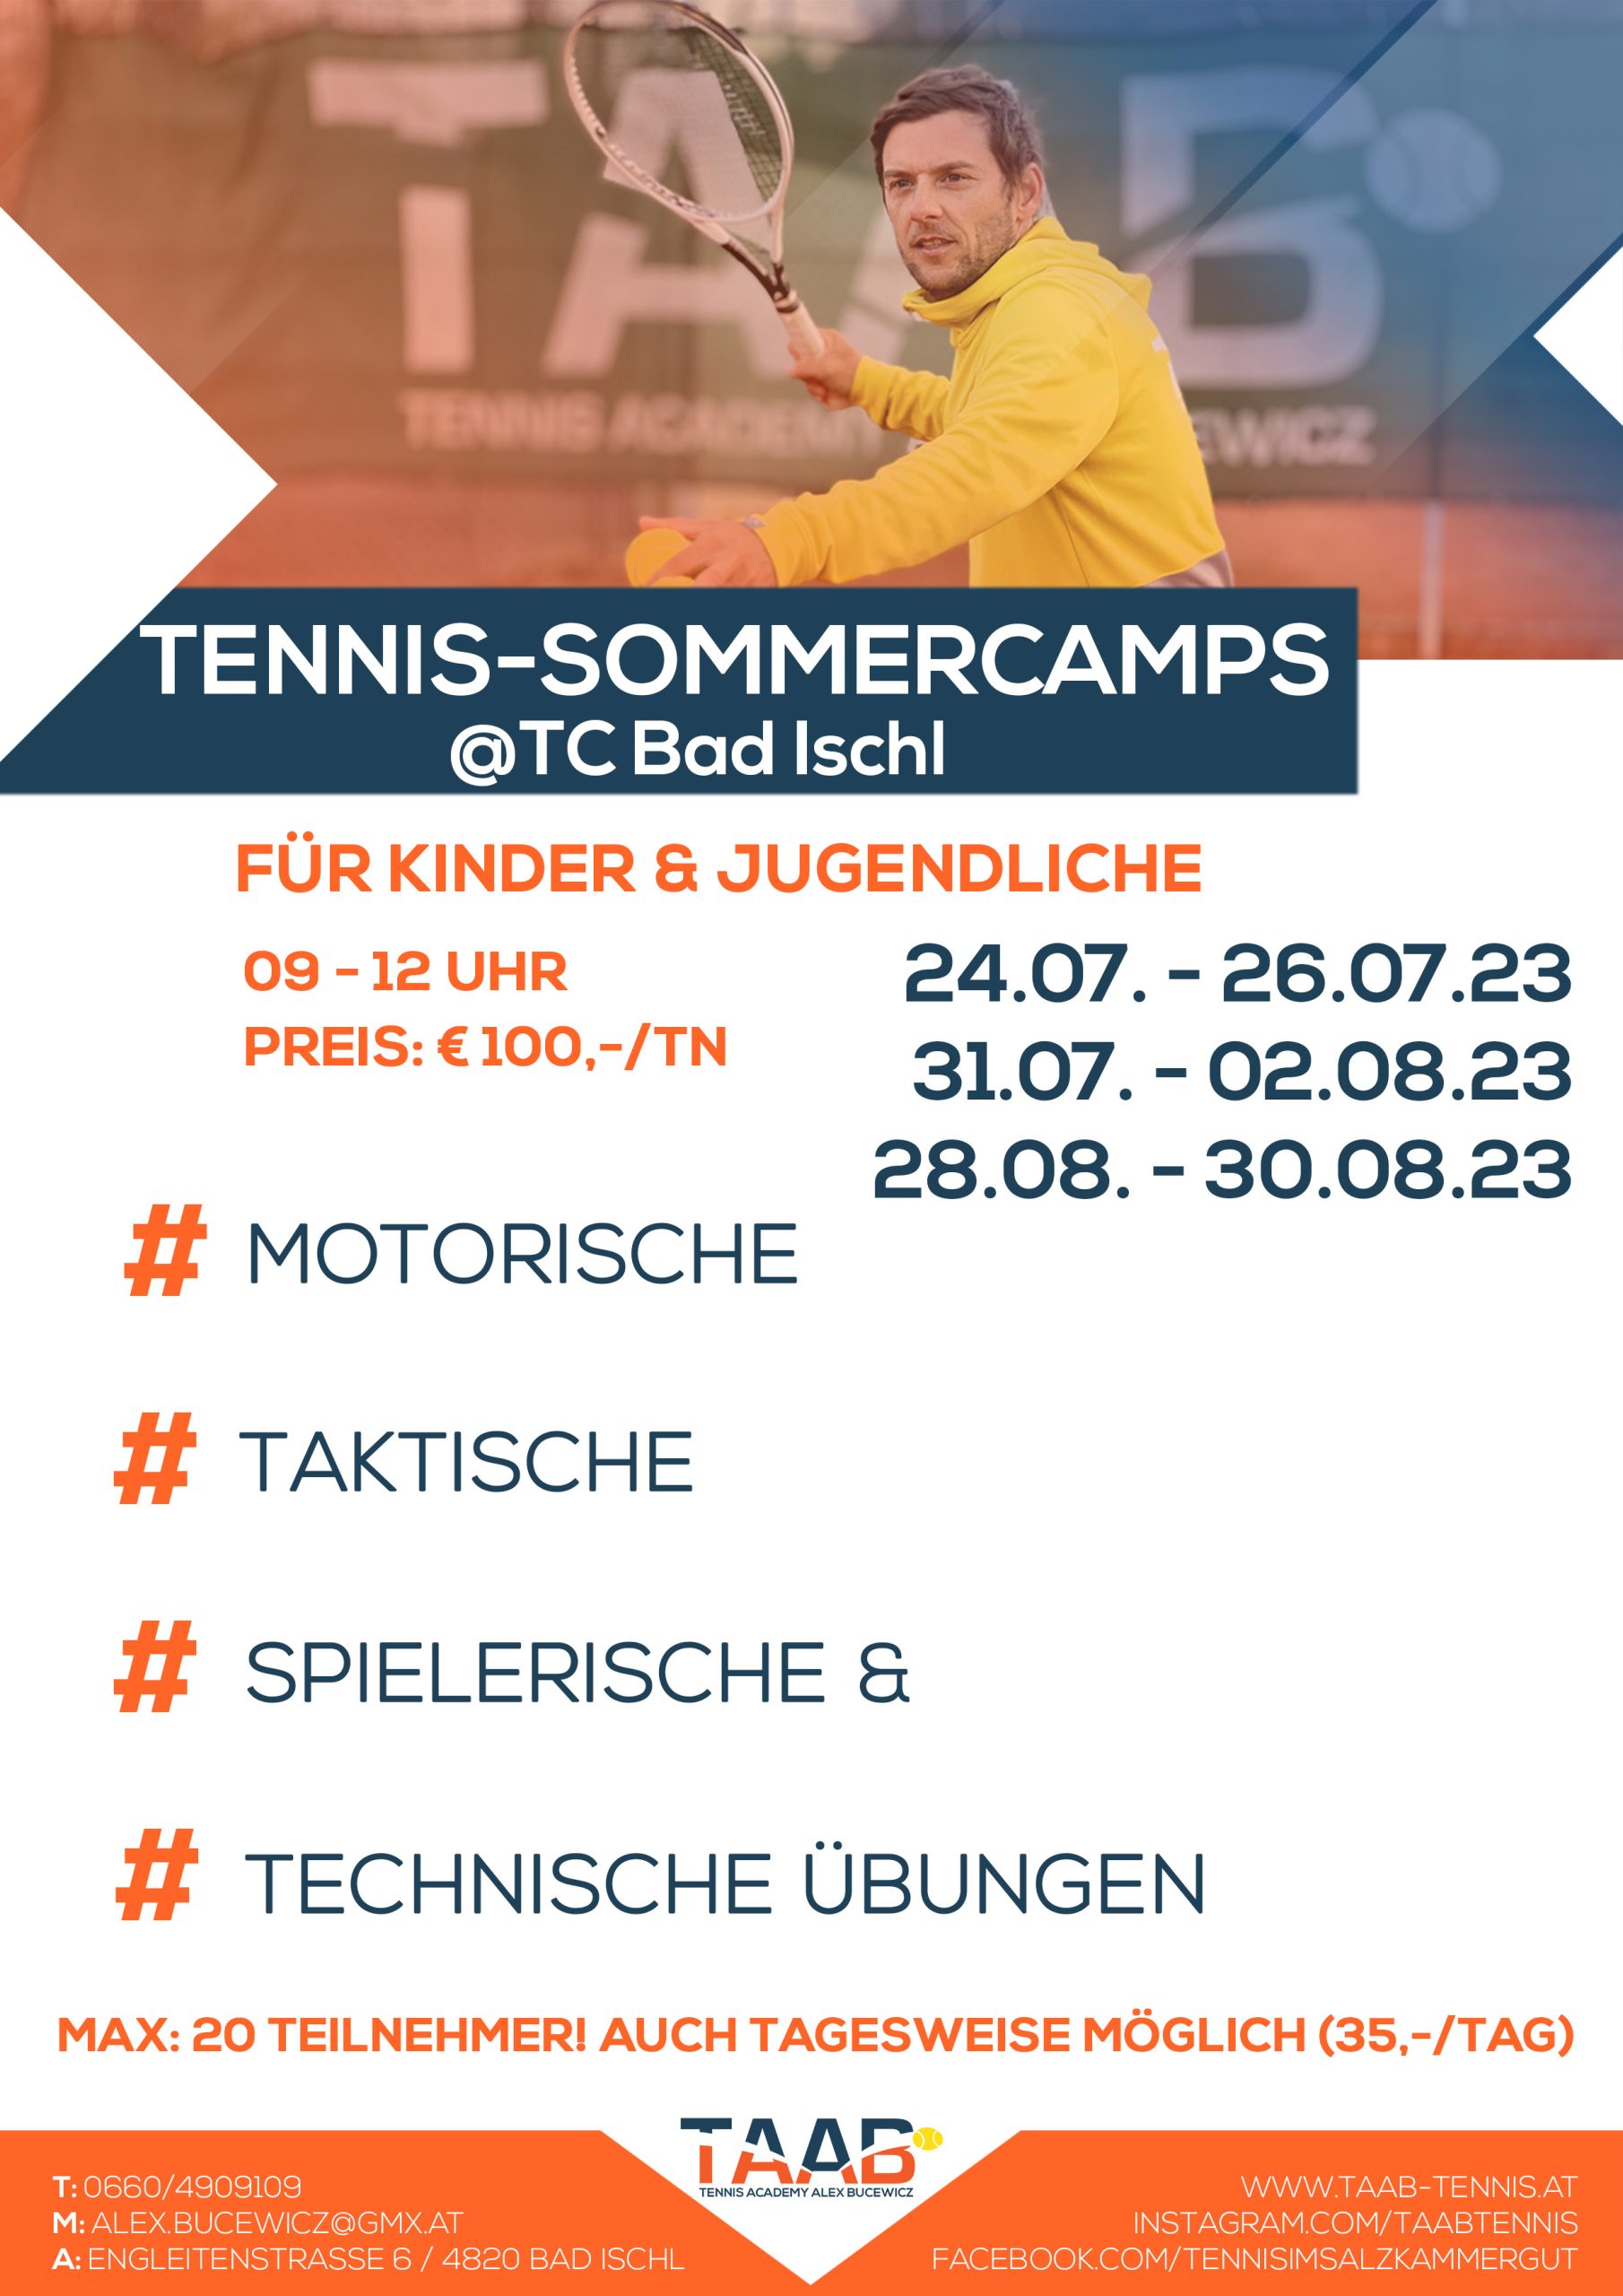 Ausschreibung für Tennis-Sommercamps beim TC Bad Ischl